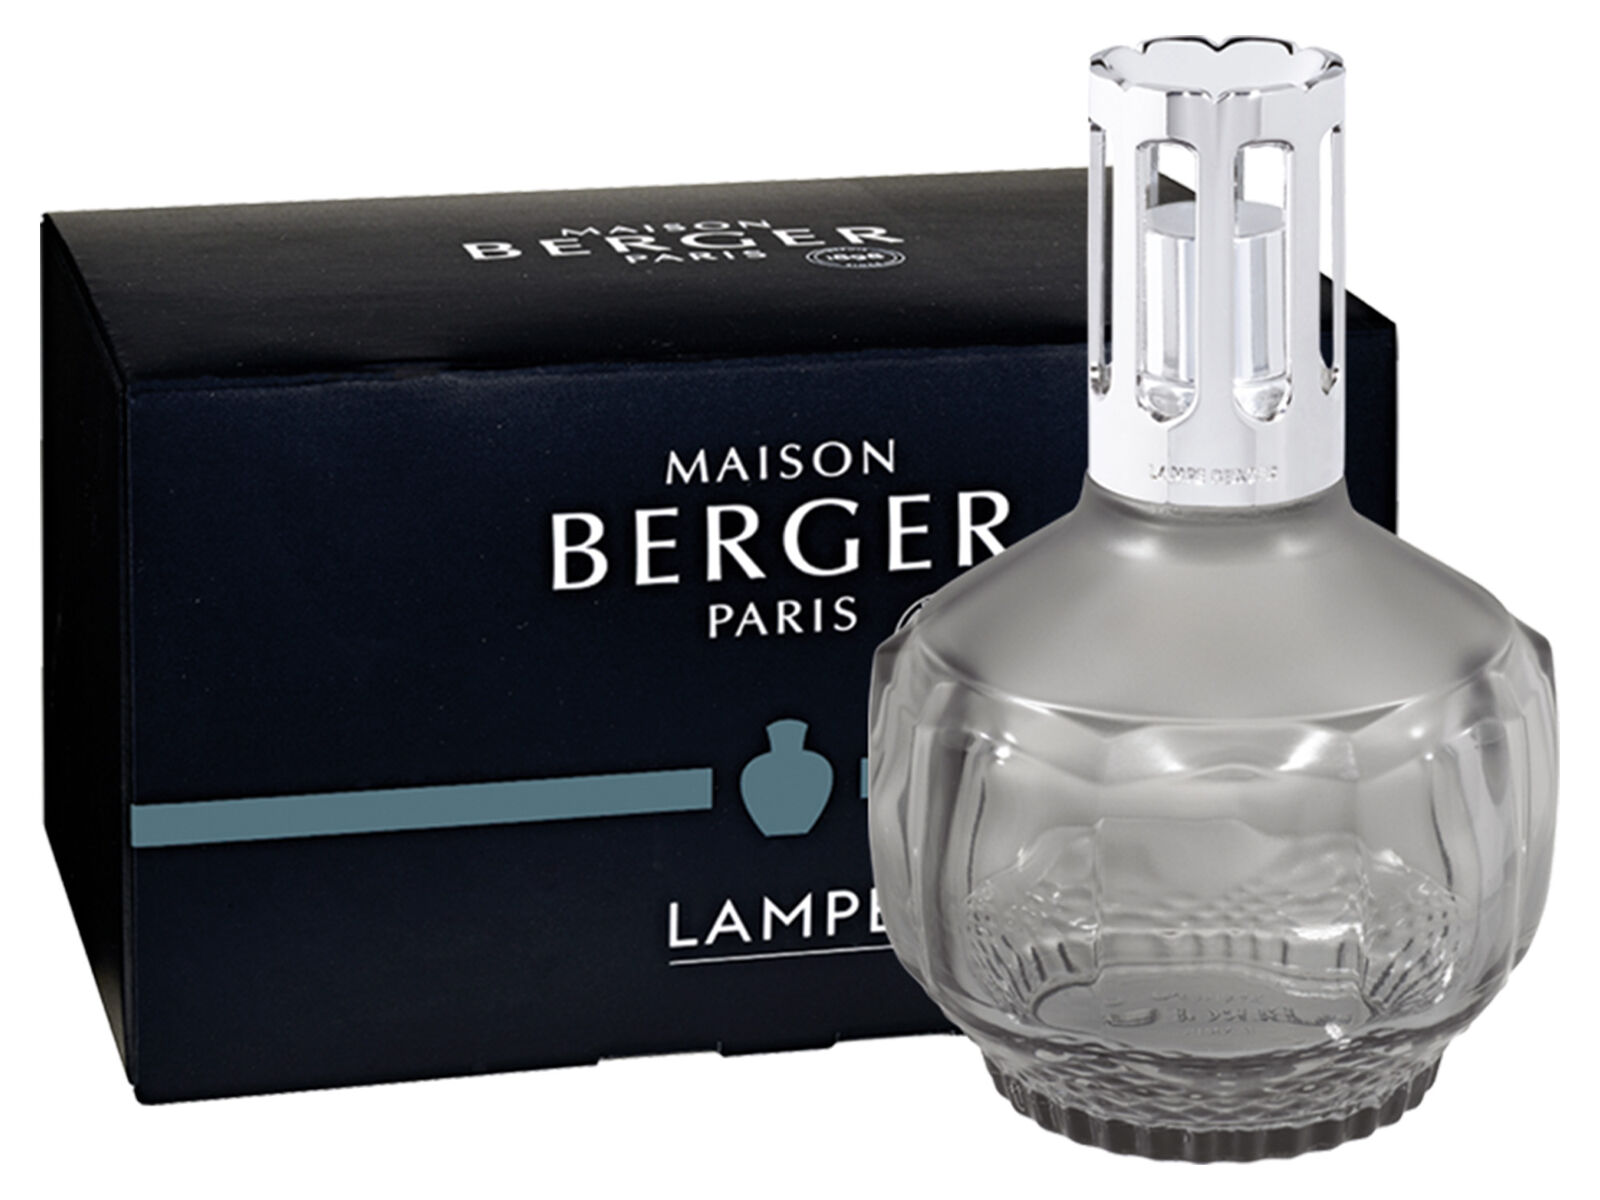 Maison Berger Paris Duftlampe 4832 |   Molecule grau